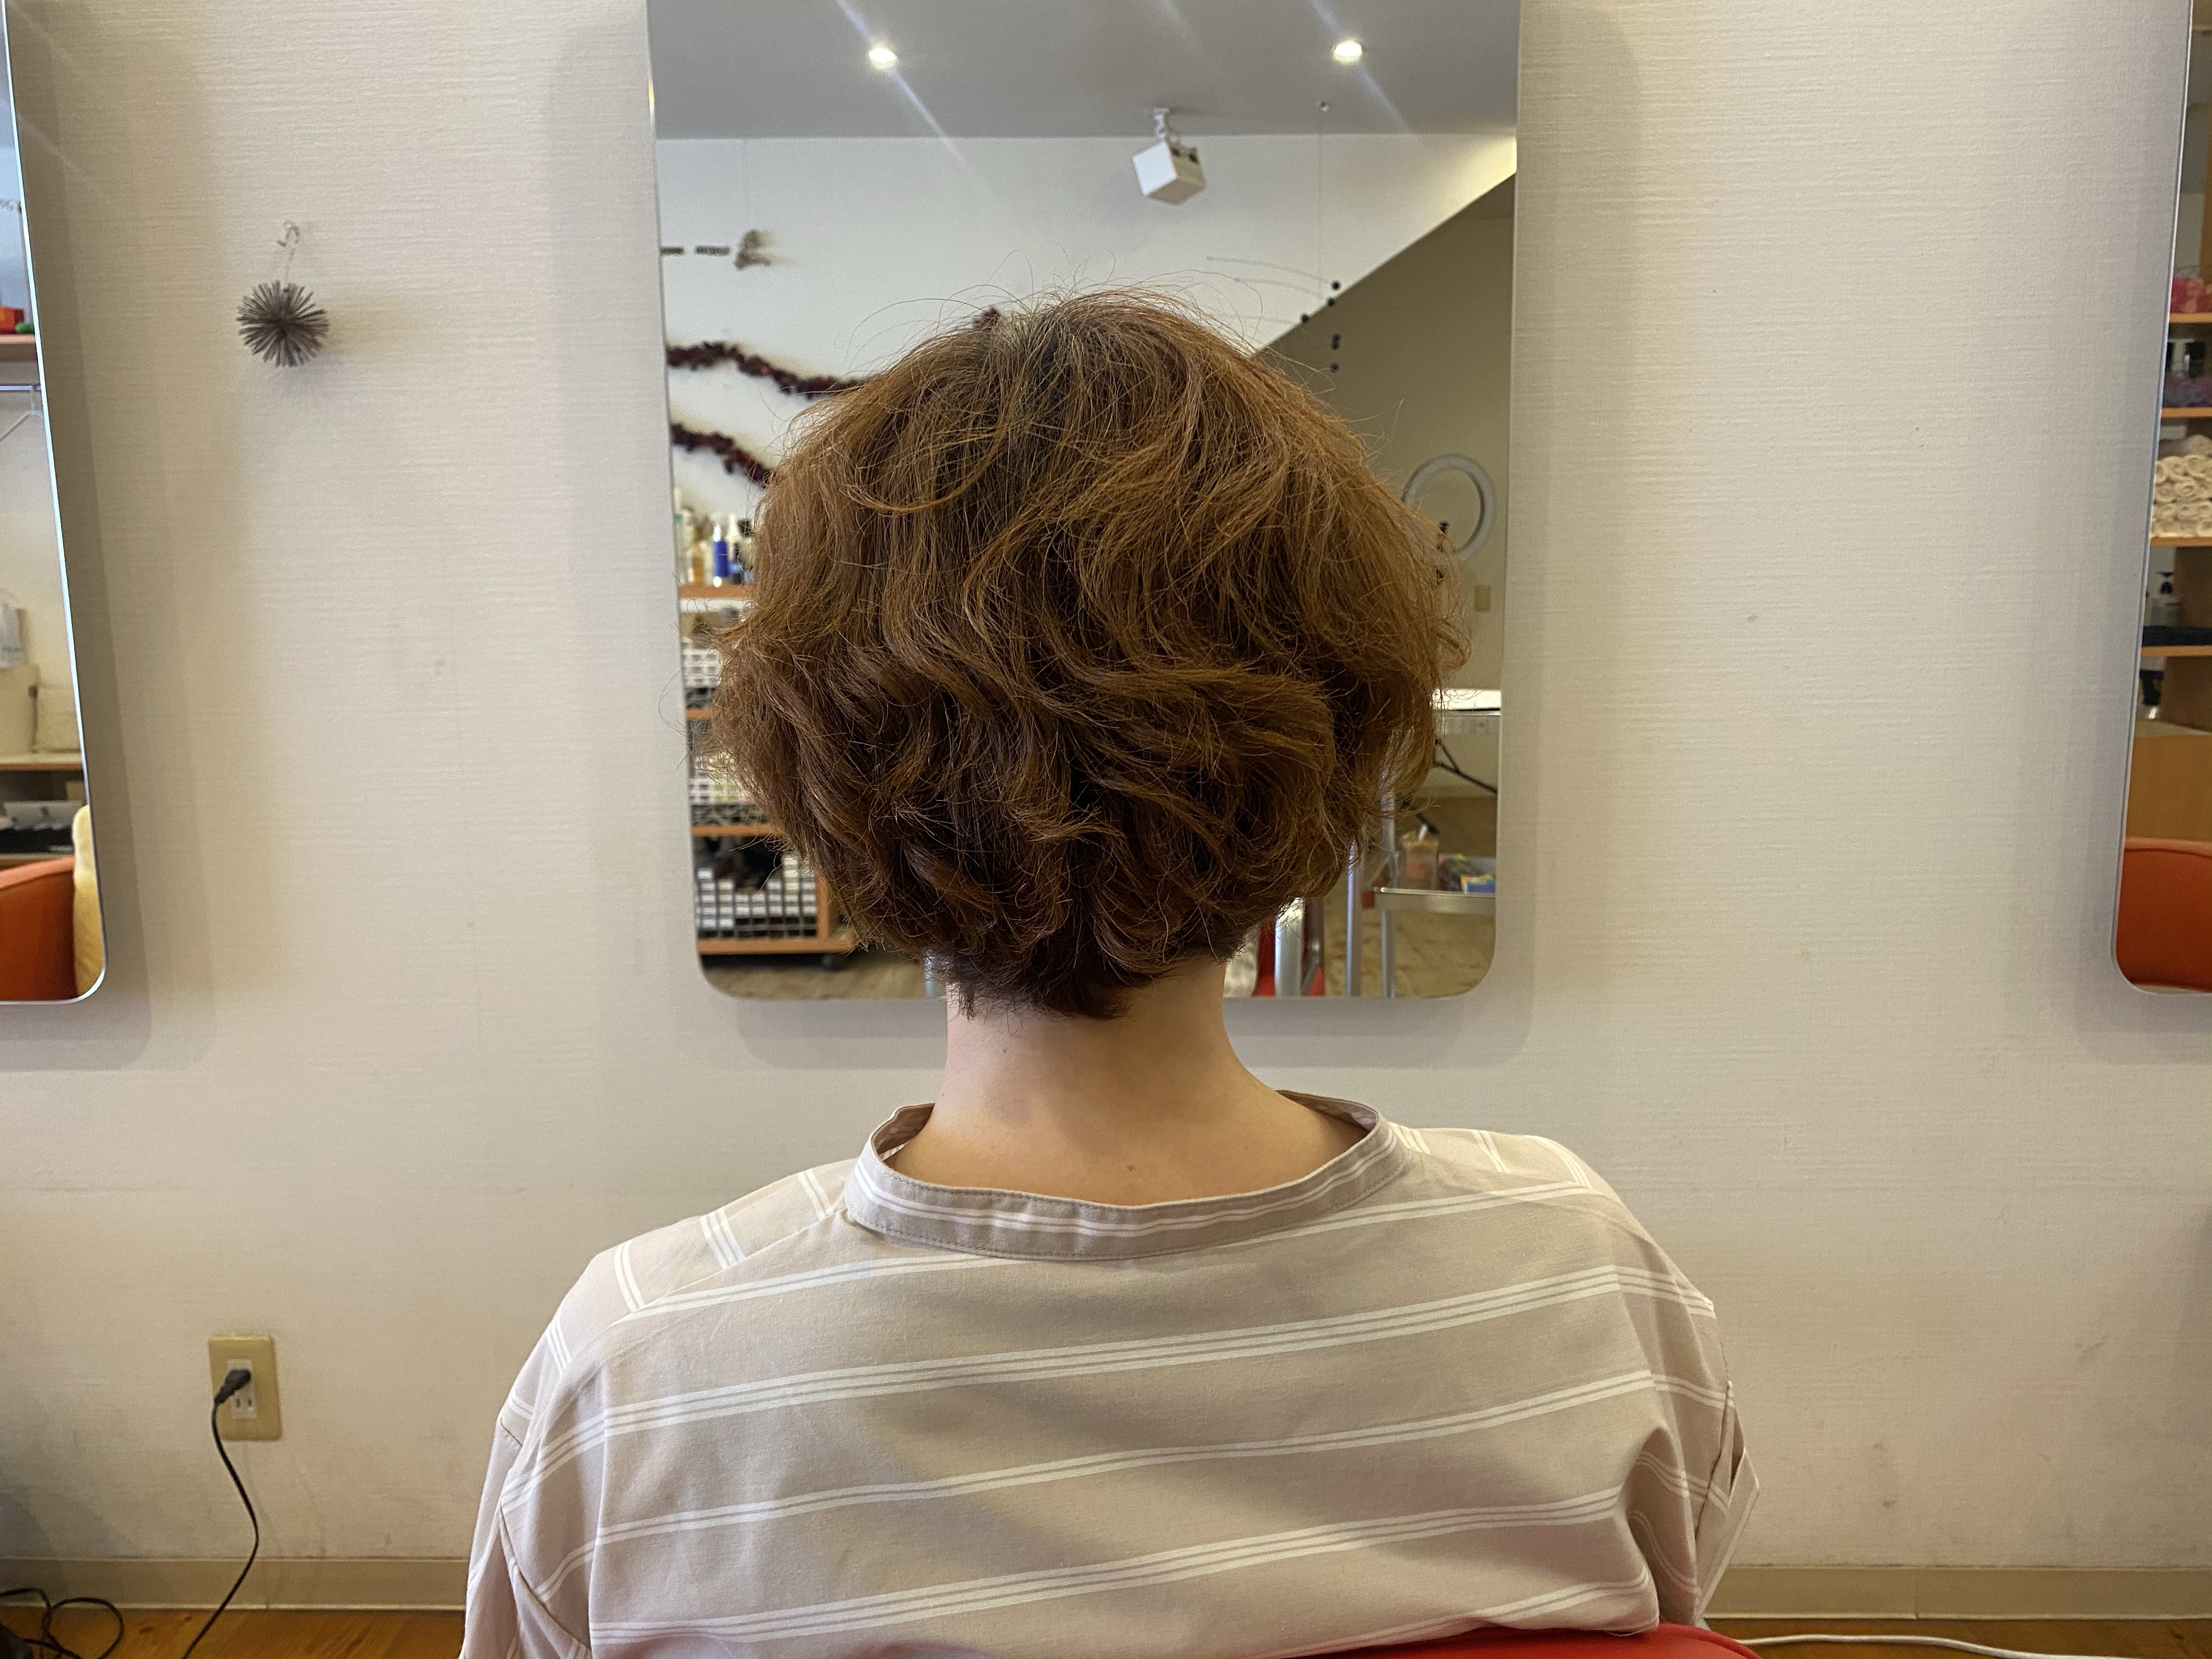 40代髪型 夏のショートヘア くせ毛 天パ さんがサロンでチェックしておくカット技法はこれ 総社市 美容室ルチア 30代 40代 50代 の髪の悩み解消